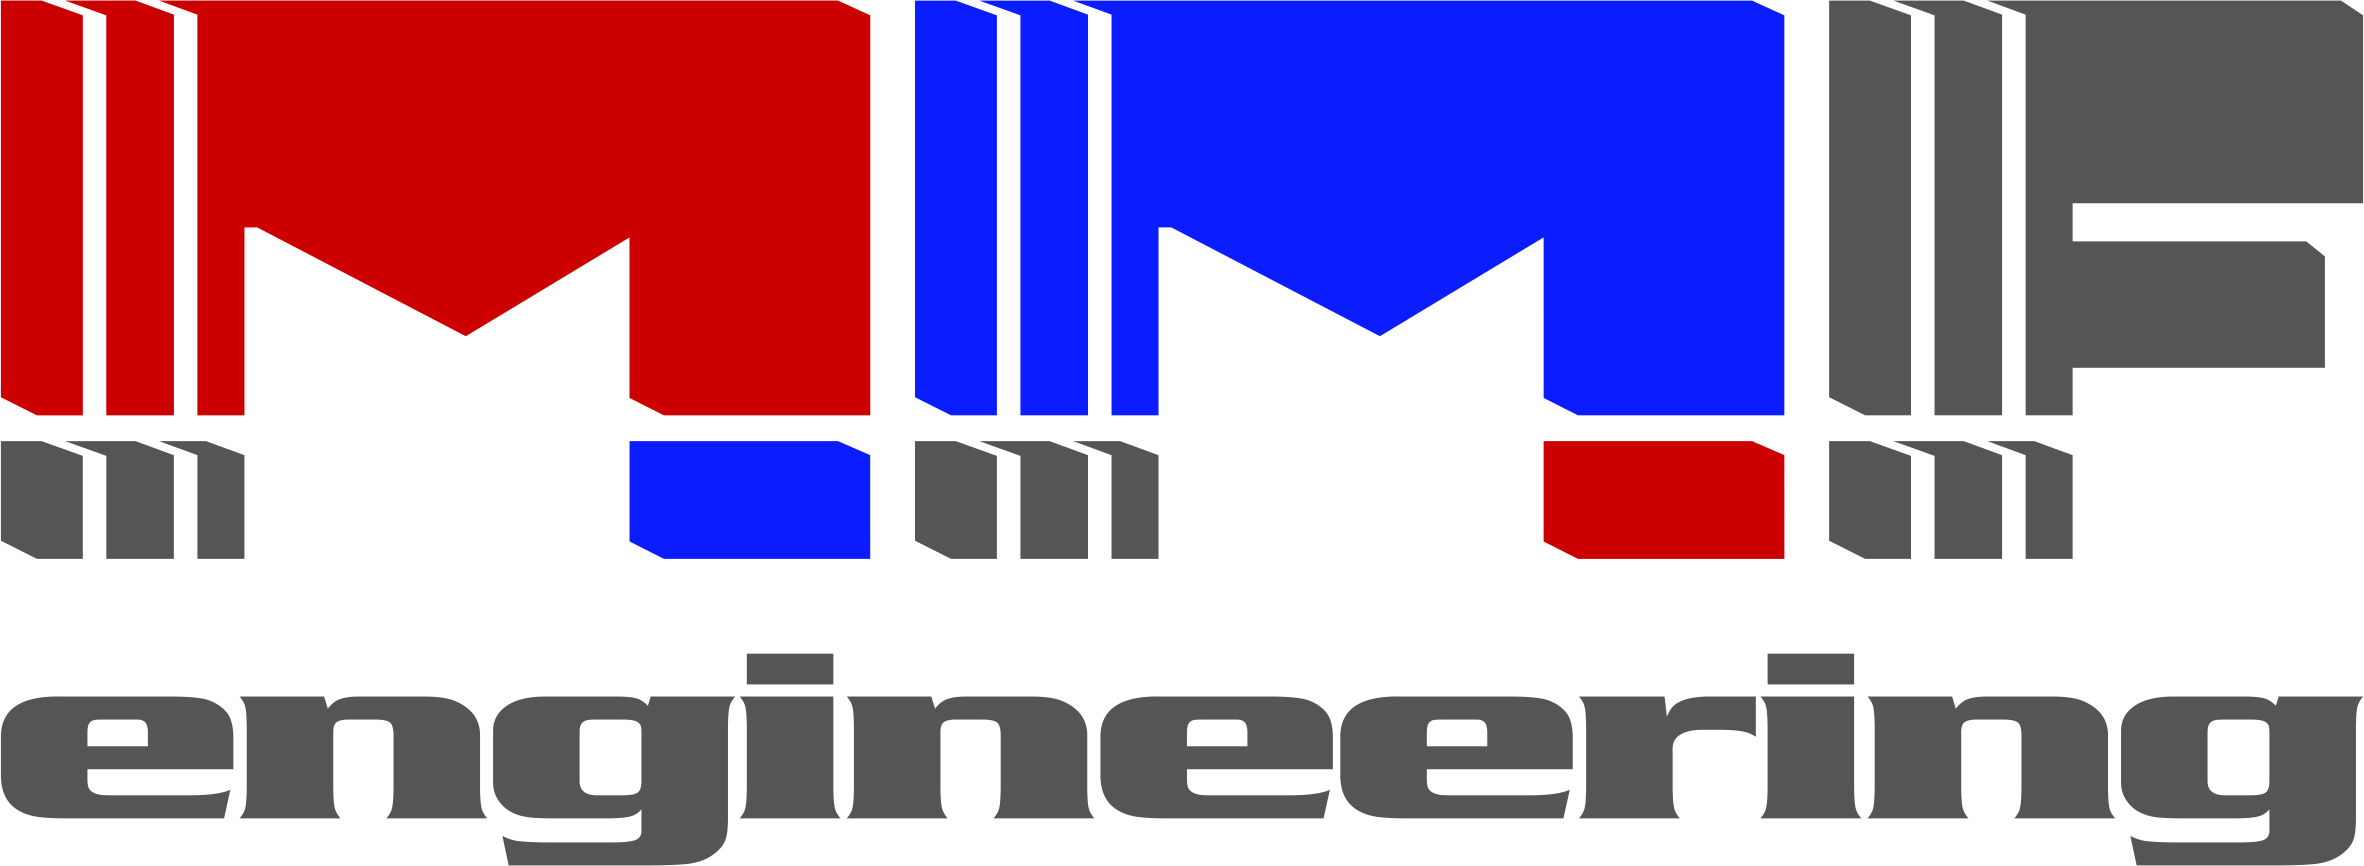 MMF - Ihr Partner für Maschinenelemente-Logo